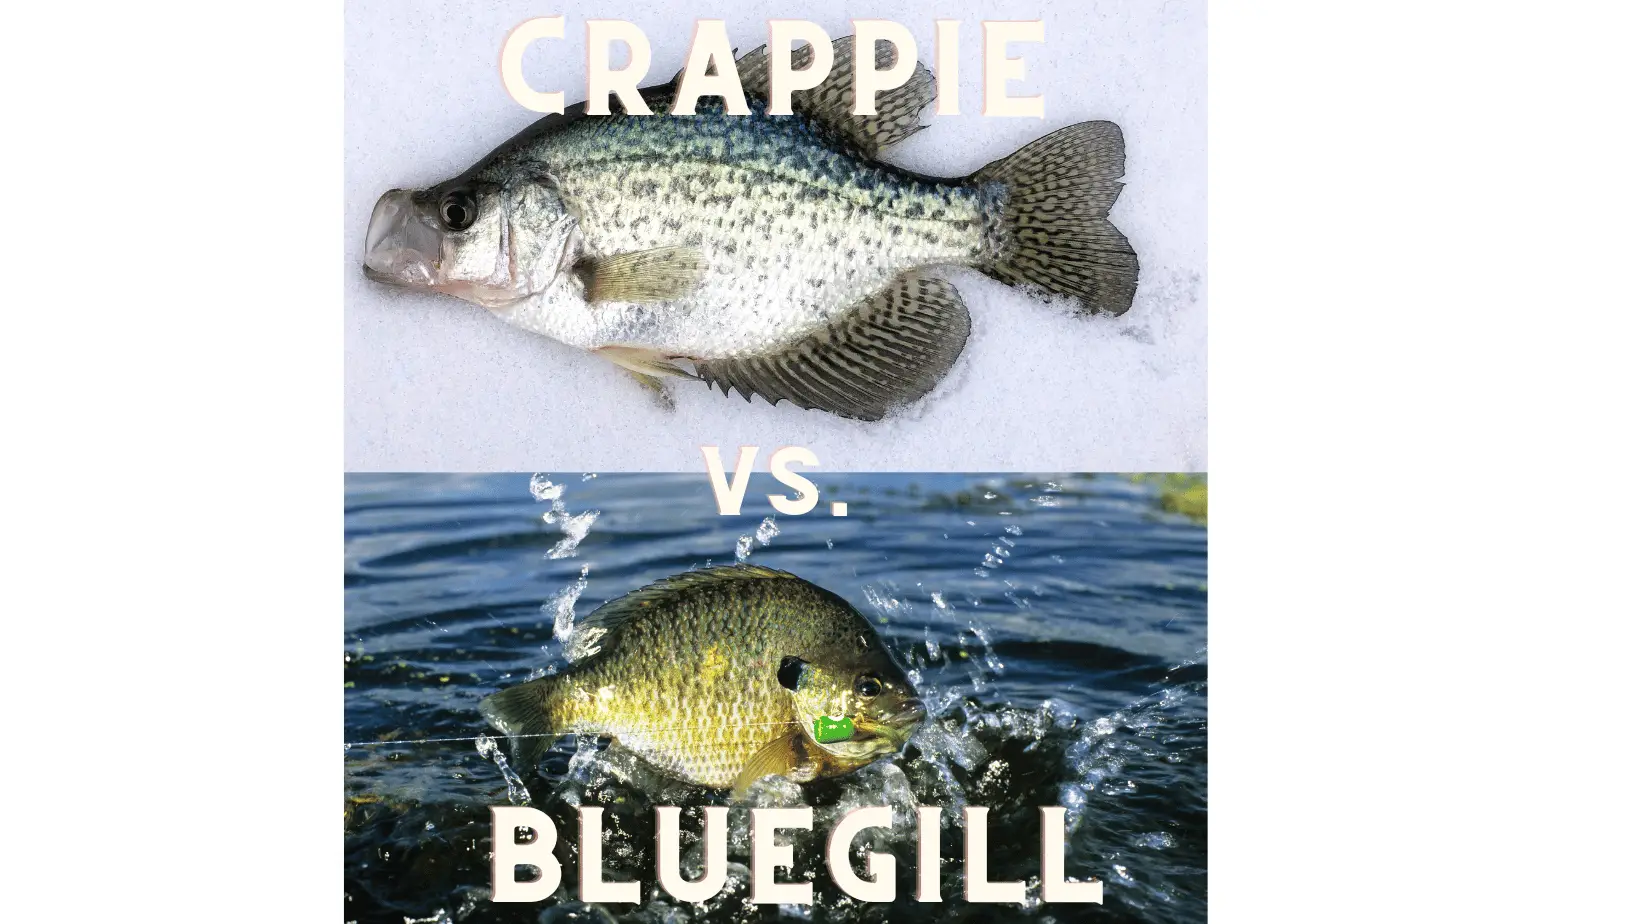 Crappie vs. Bluegill cover